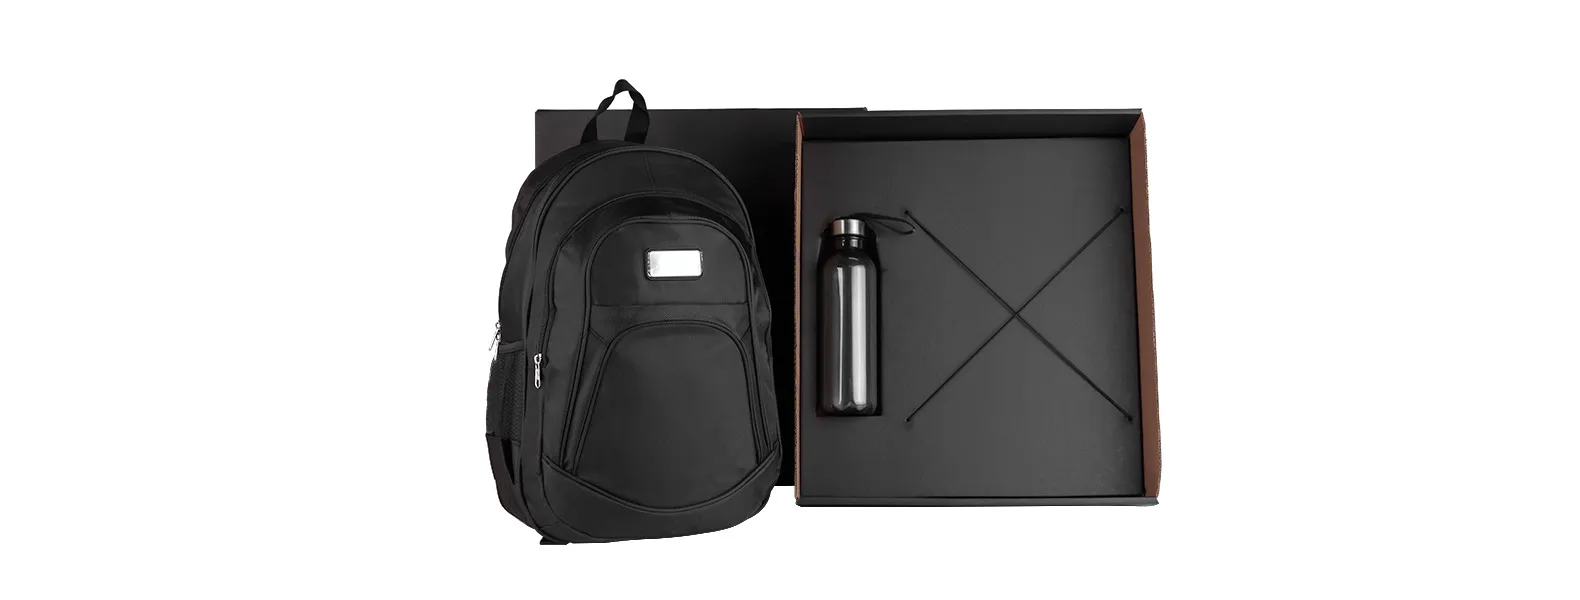 Kit composto por mochila preta em Poliester 600D/1680D que contém alças para as costas, alça para as mãos, compartimento para notebook de até 15, 3 bolsos externos com zíper e 2 bolsos externos em tela. Conta também com garrafa preta em PET.